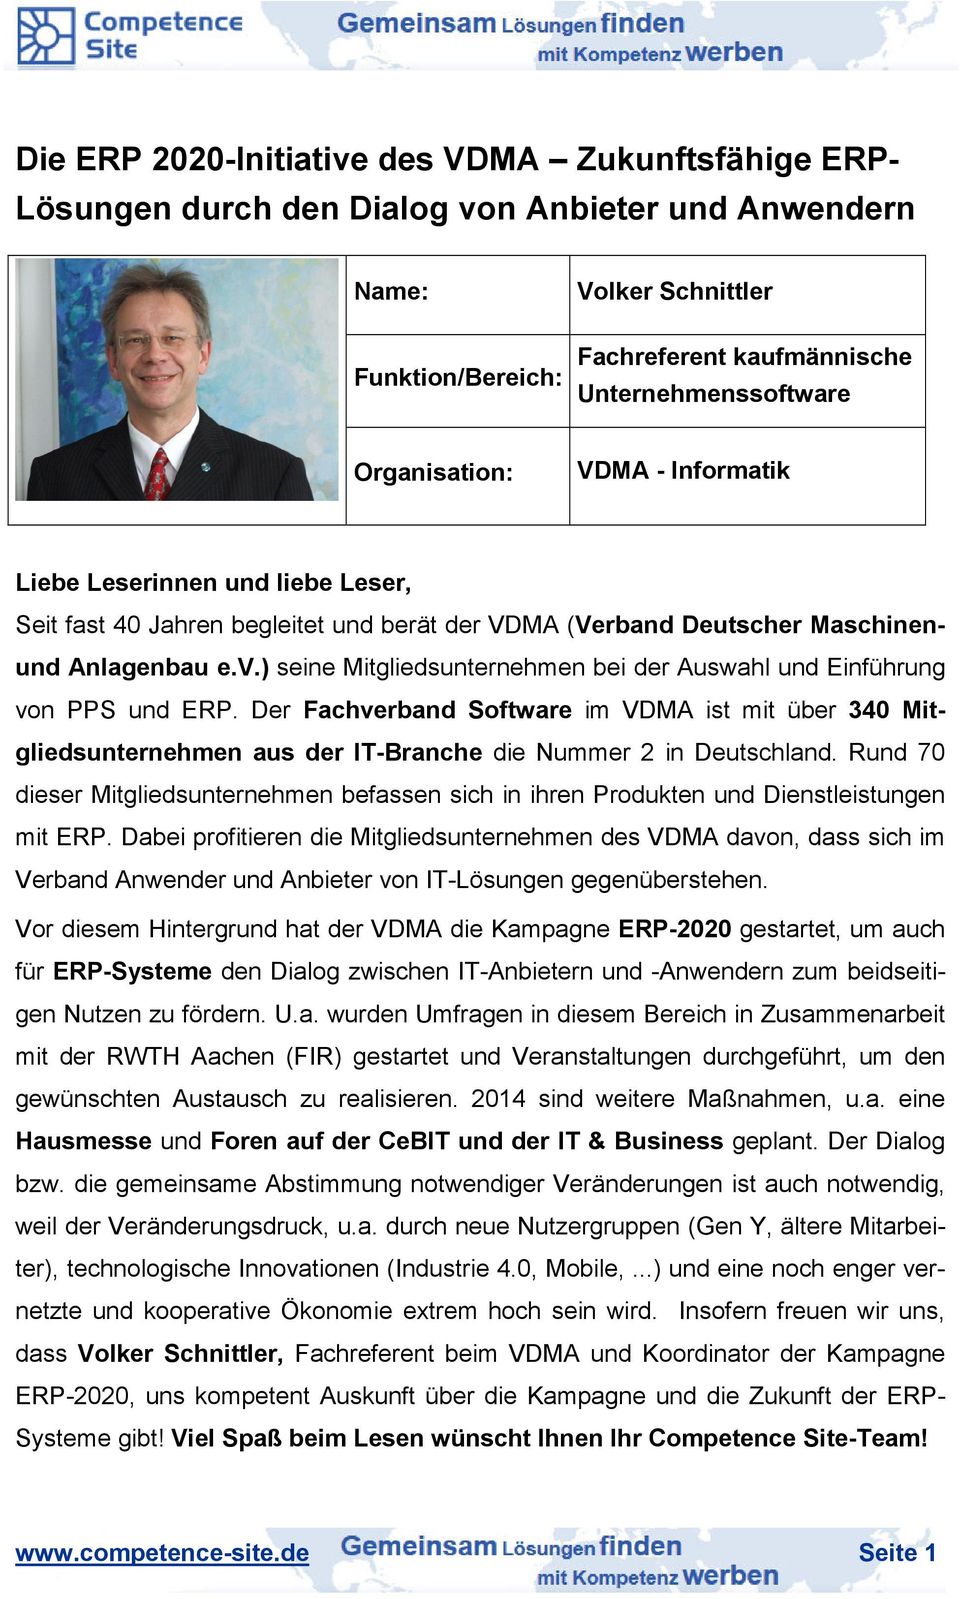 ) seine Mitgliedsunternehmen bei der Auswahl und Einführung von PPS und ERP. Der Fachverband Software im VDMA ist mit über 340 Mitgliedsunternehmen aus der IT-Branche die Nummer 2 in Deutschland.